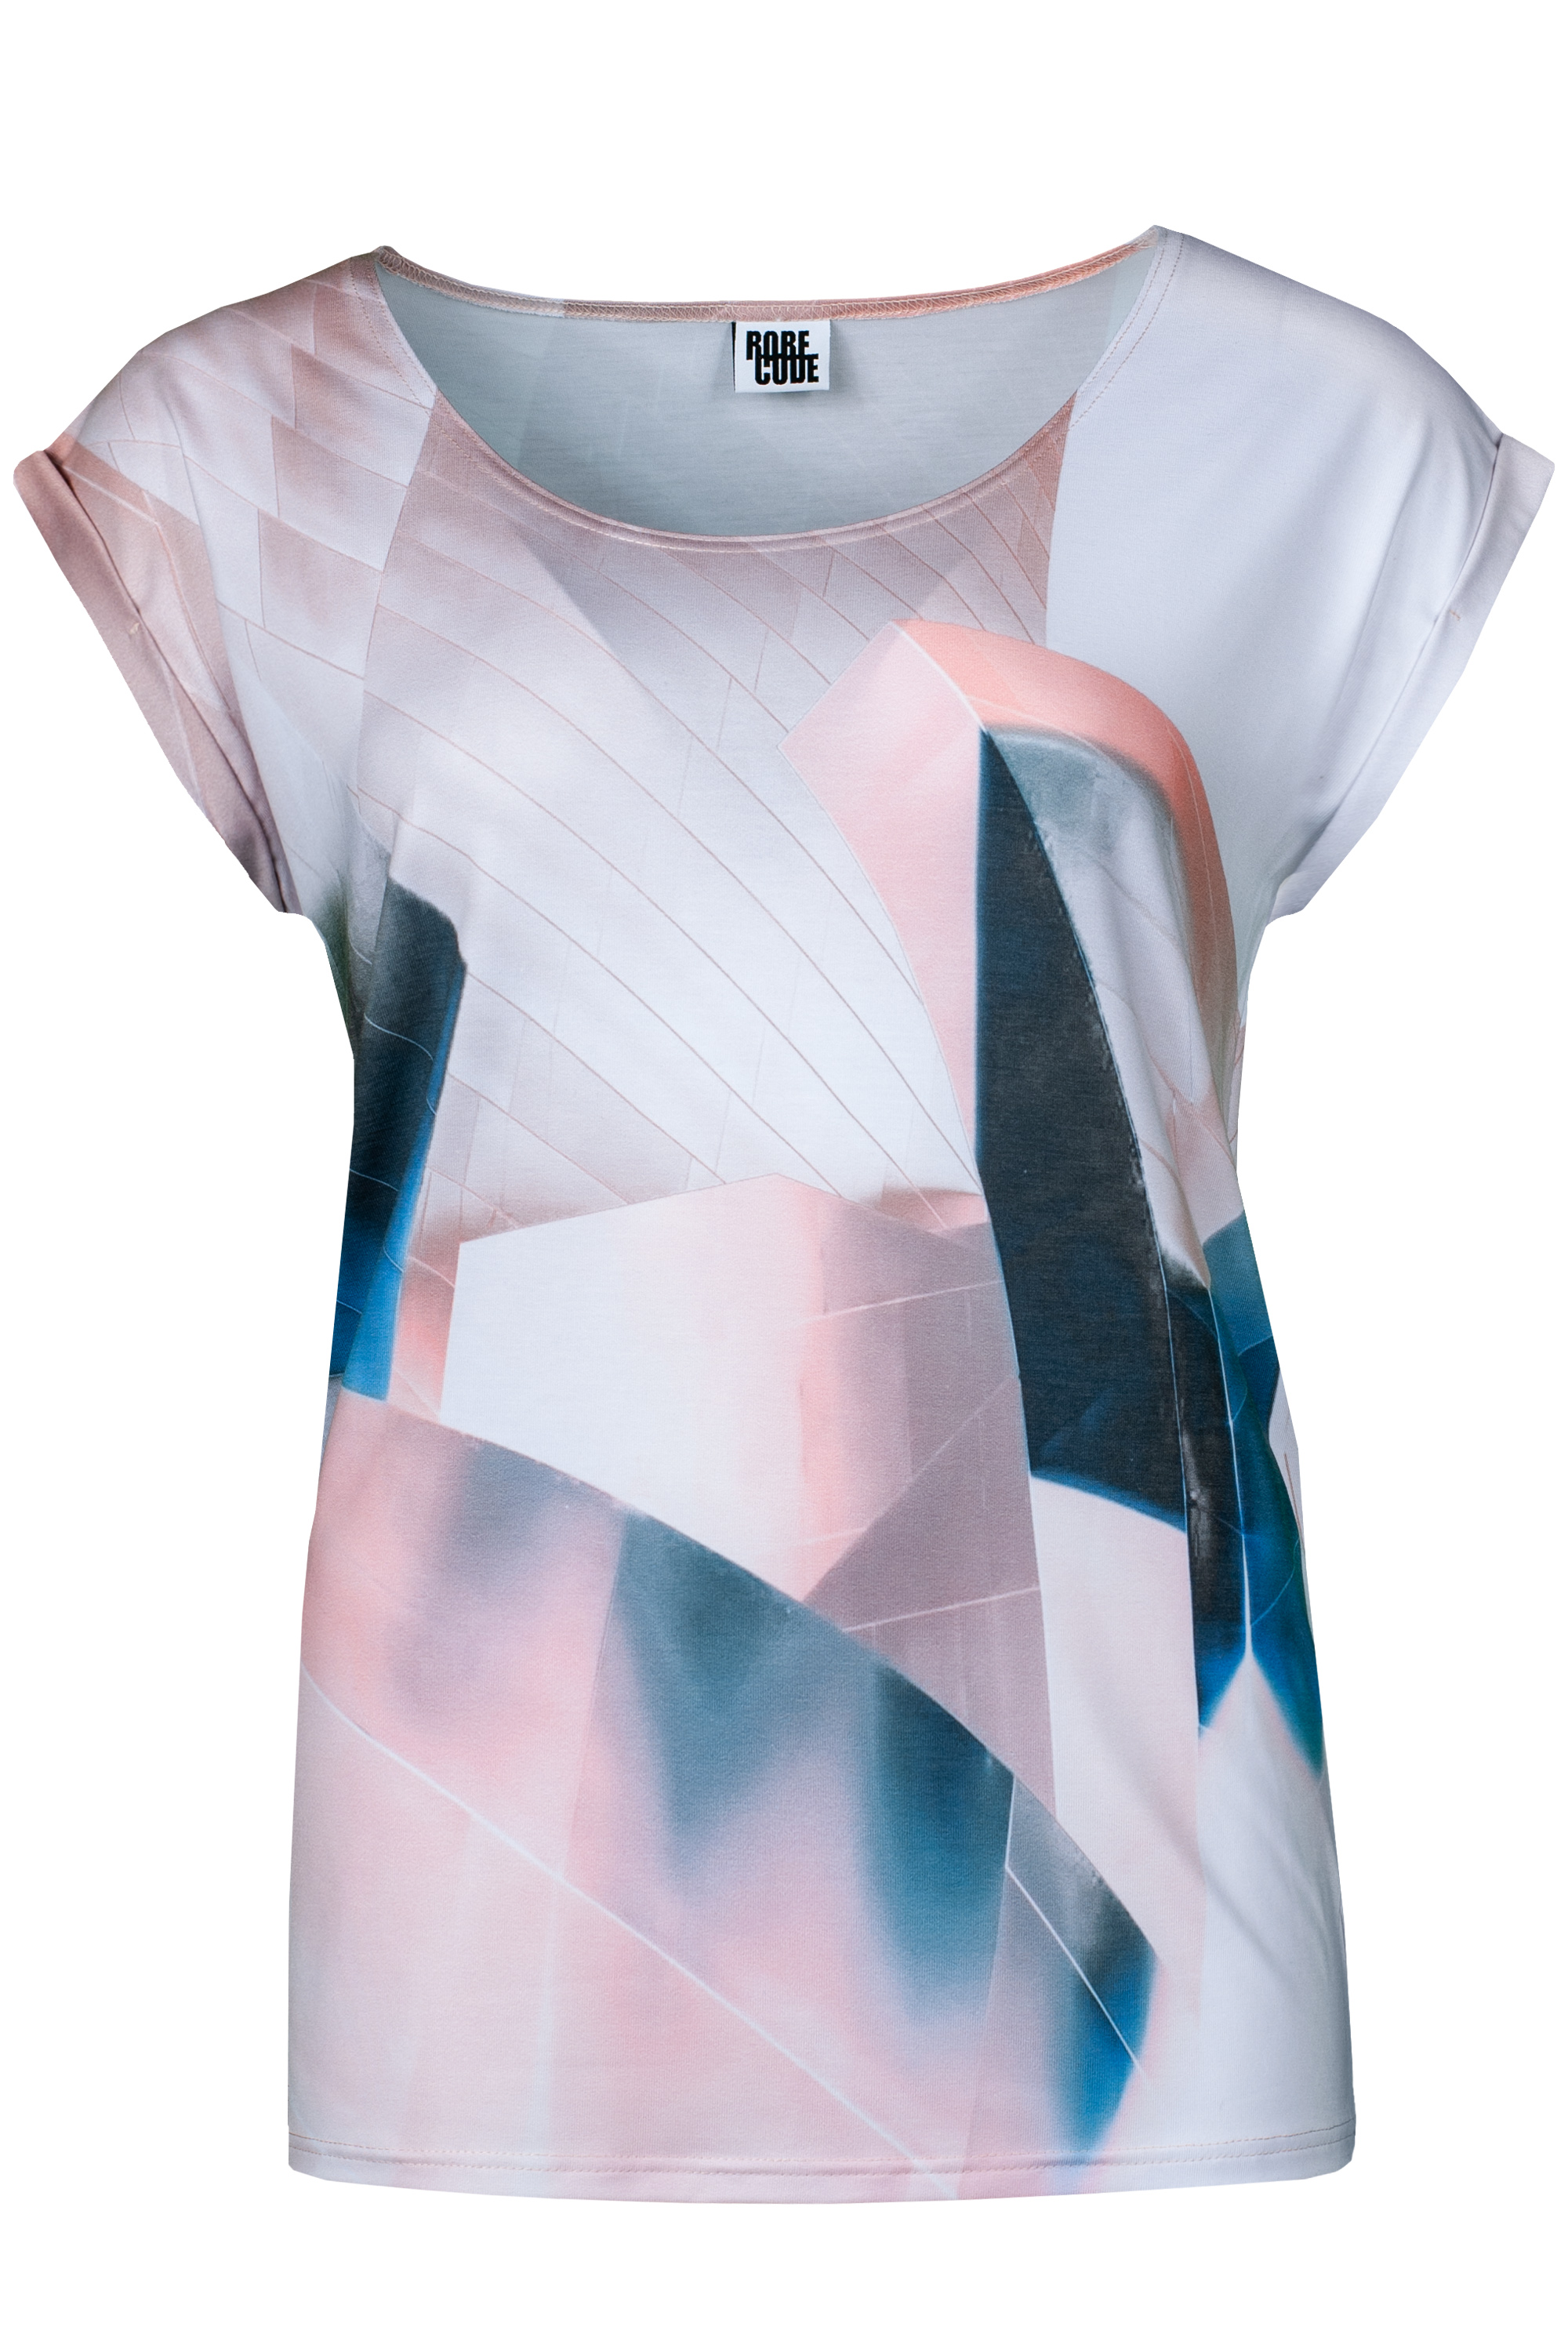 Frontansicht T-Shirt Wendular mit geometrischen Formen in weiß, rosa,blau